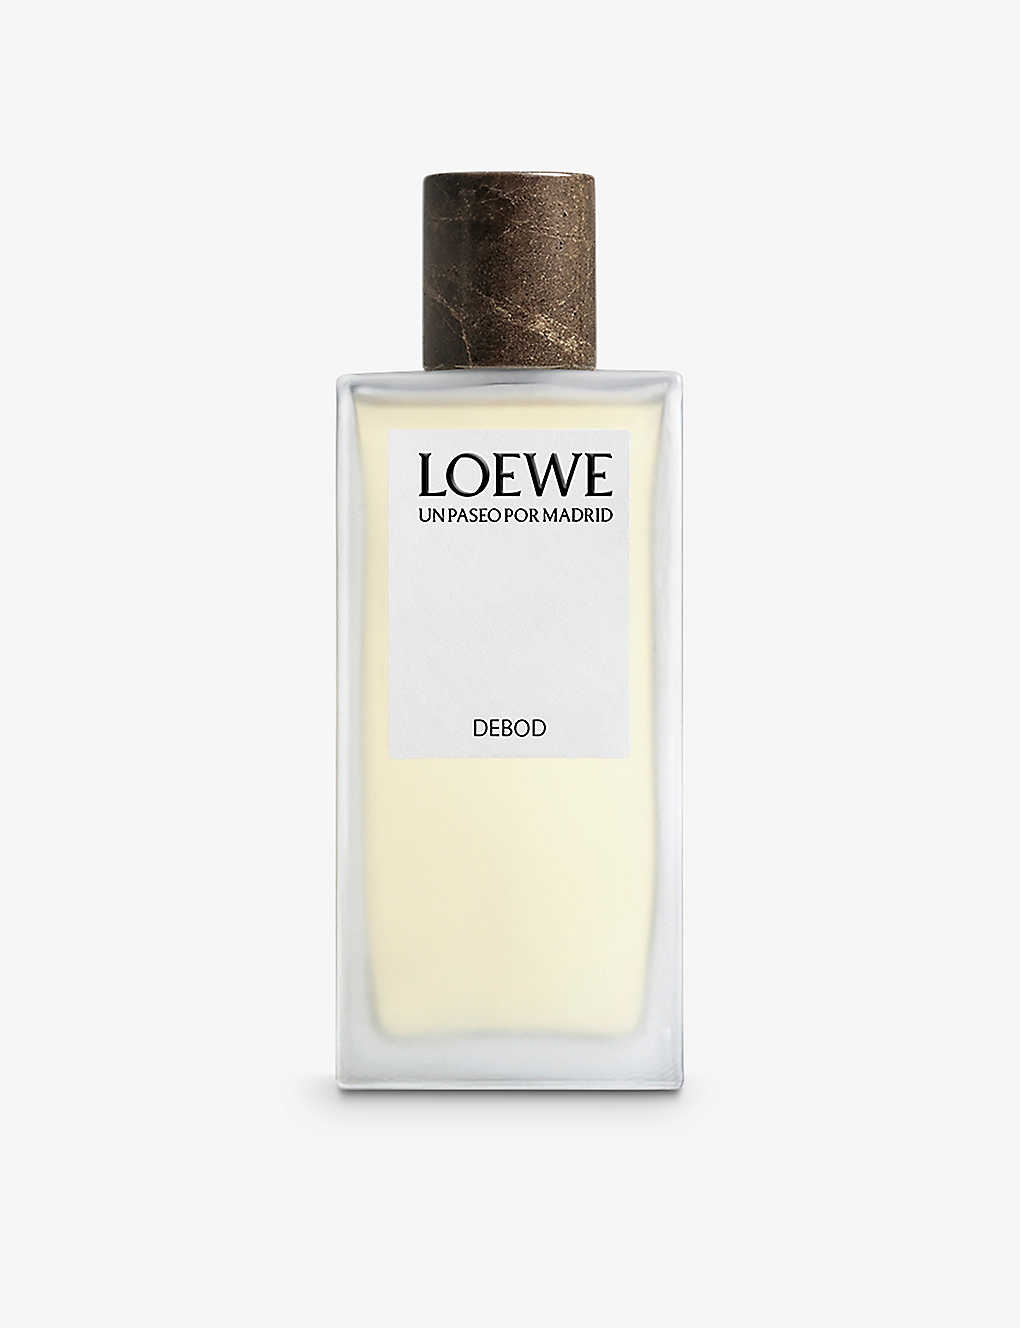 Loewe Un Paseo Por Madrid Debod Eau De Parfum